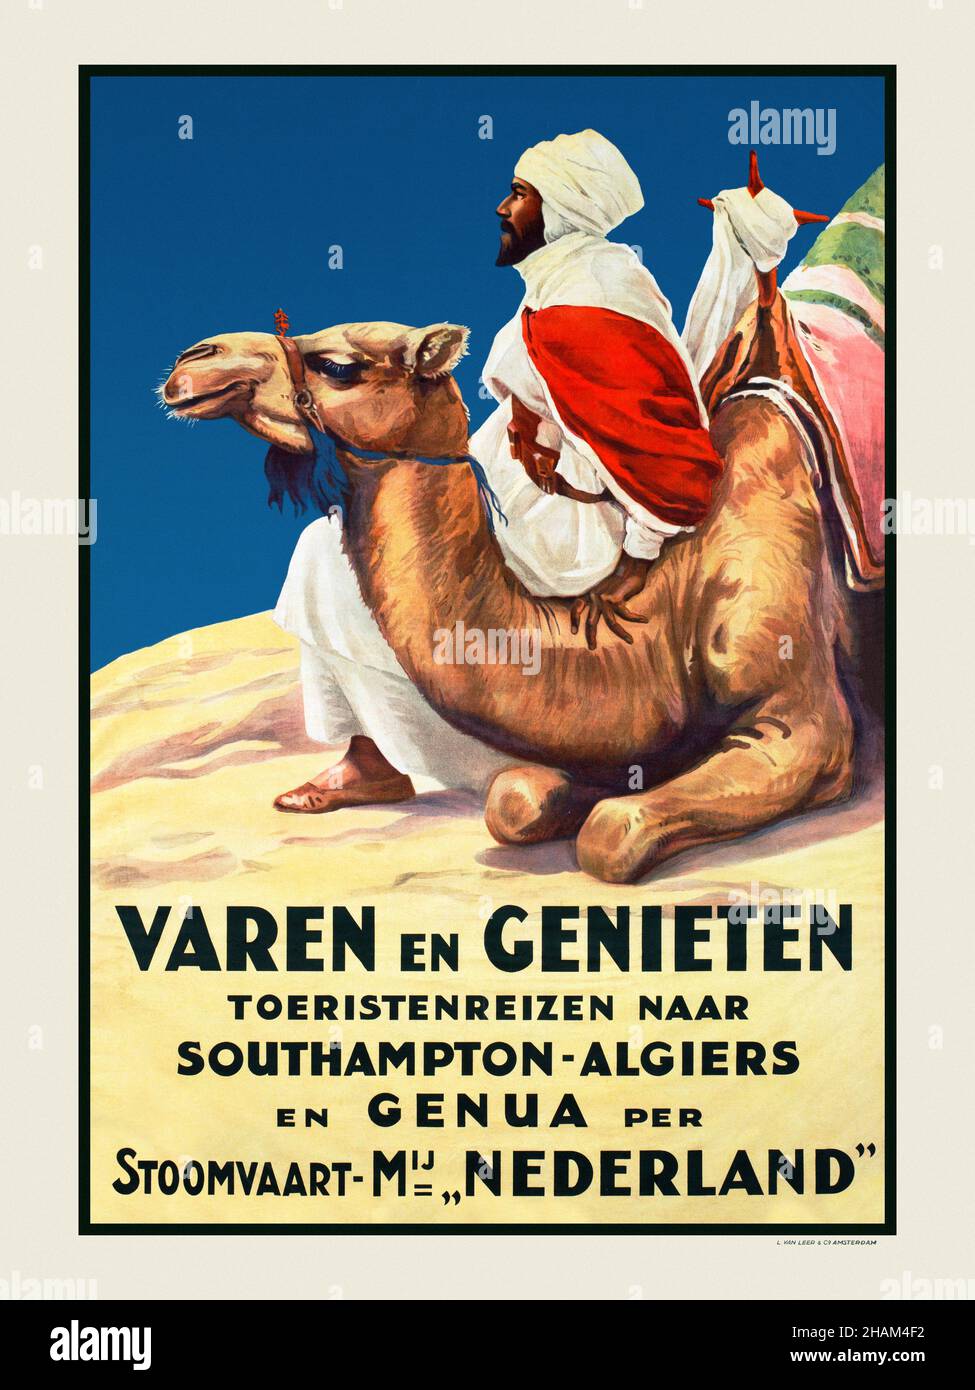 Varen en genieten.Toeristenreizen naar Southampton-Alger en Genua per Stoomvaart Mij.Pays-Bas.Affiche publiée en 1926 aux pays-Bas. Banque D'Images